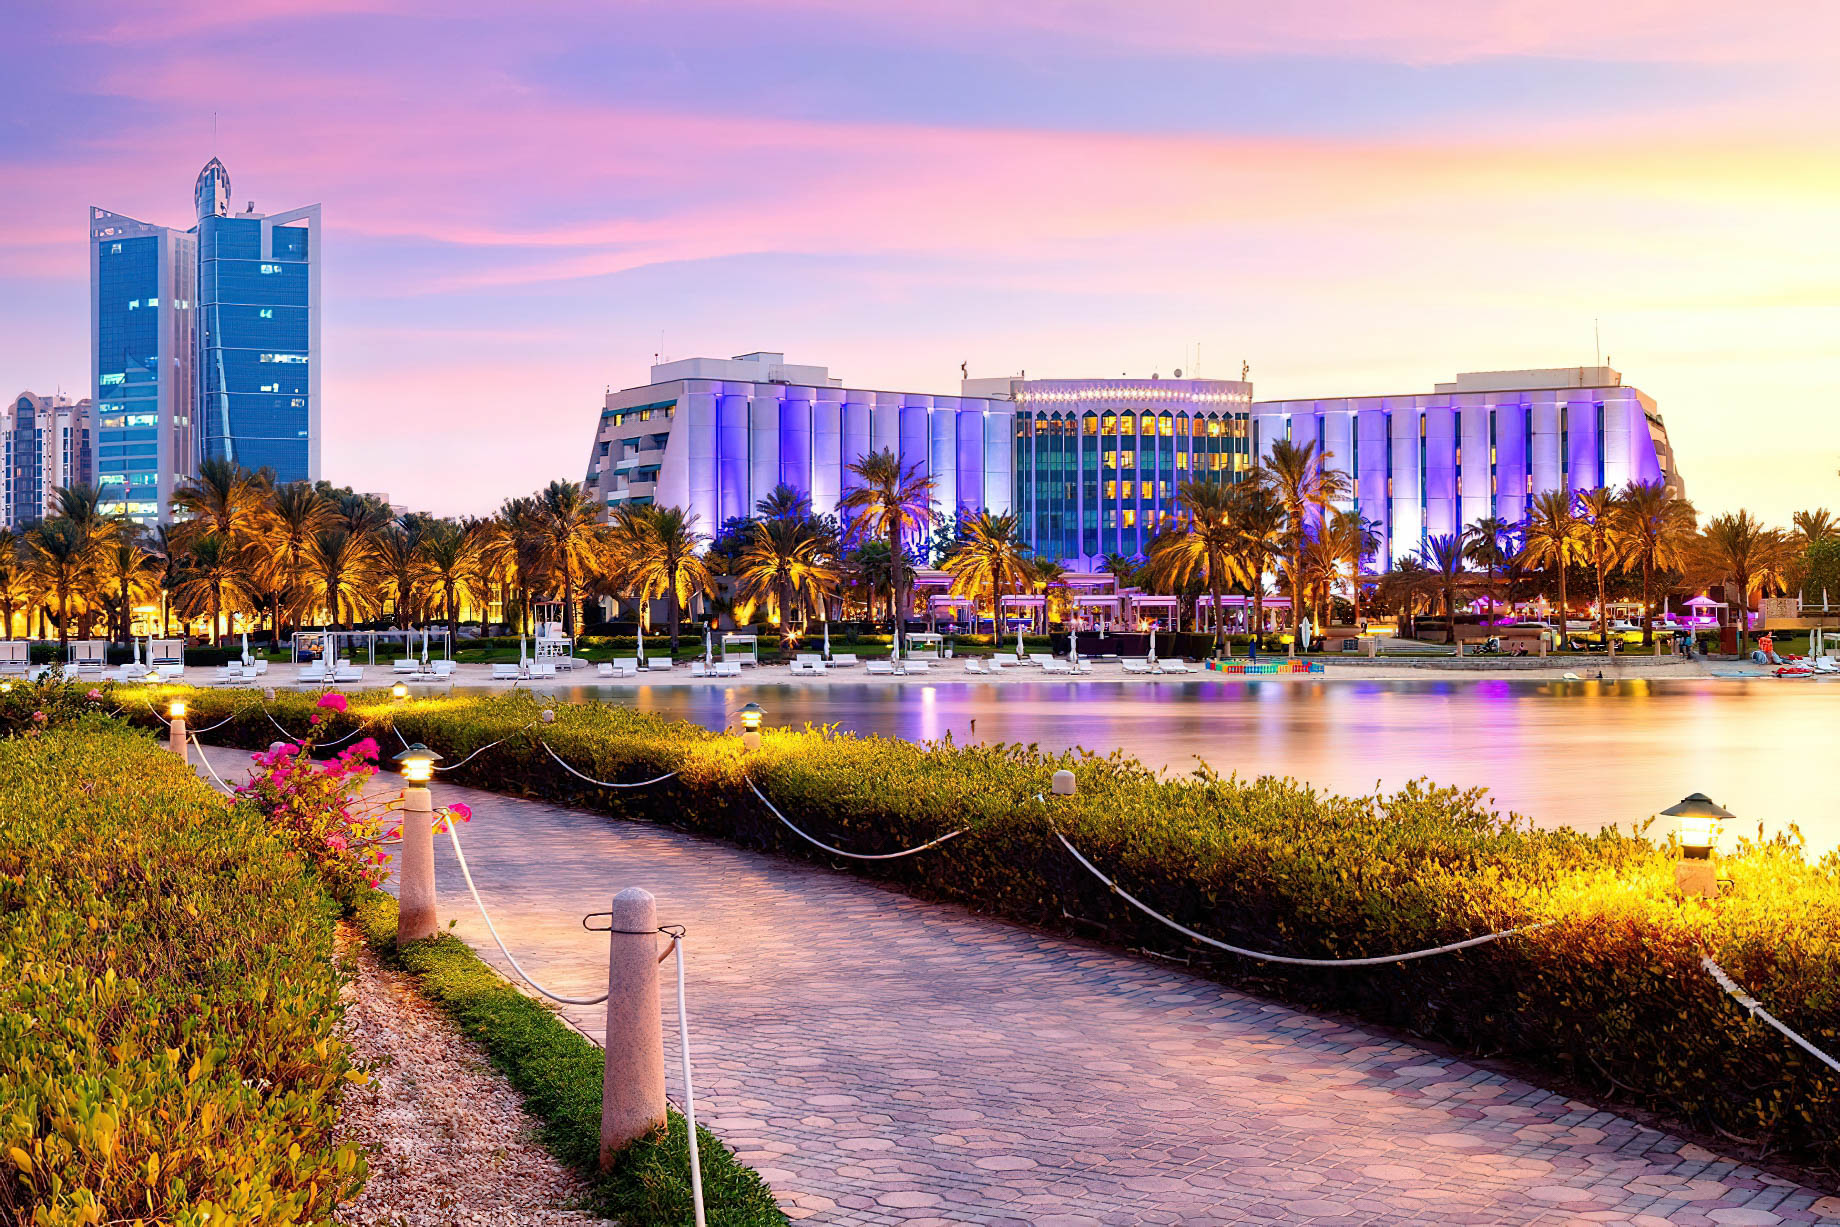 The Ritz-Carlton, Bahrain Resort Hotel – Manama, Bahrain – Sunset View